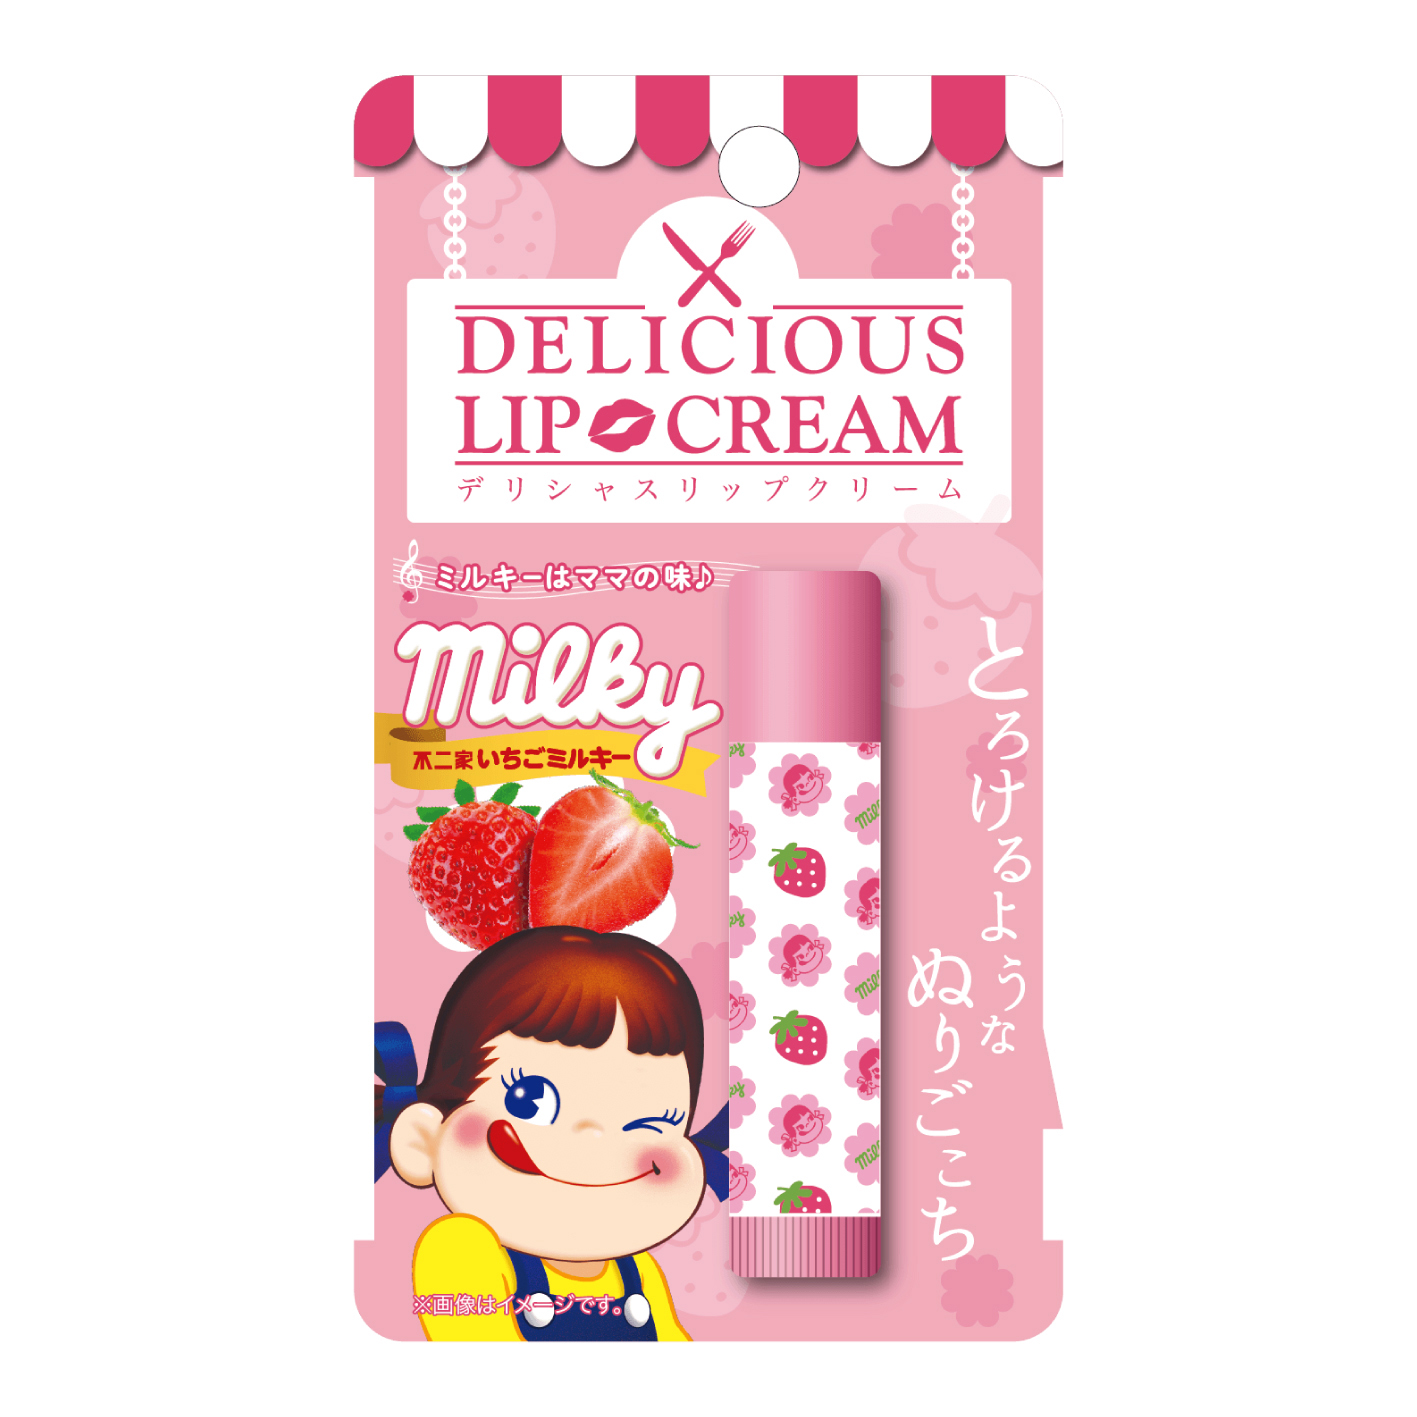 くちびるから ミルキー が香る デリシャスリップクリームに 不二家ミルキーの香りが登場 Emo Miu エモミュー